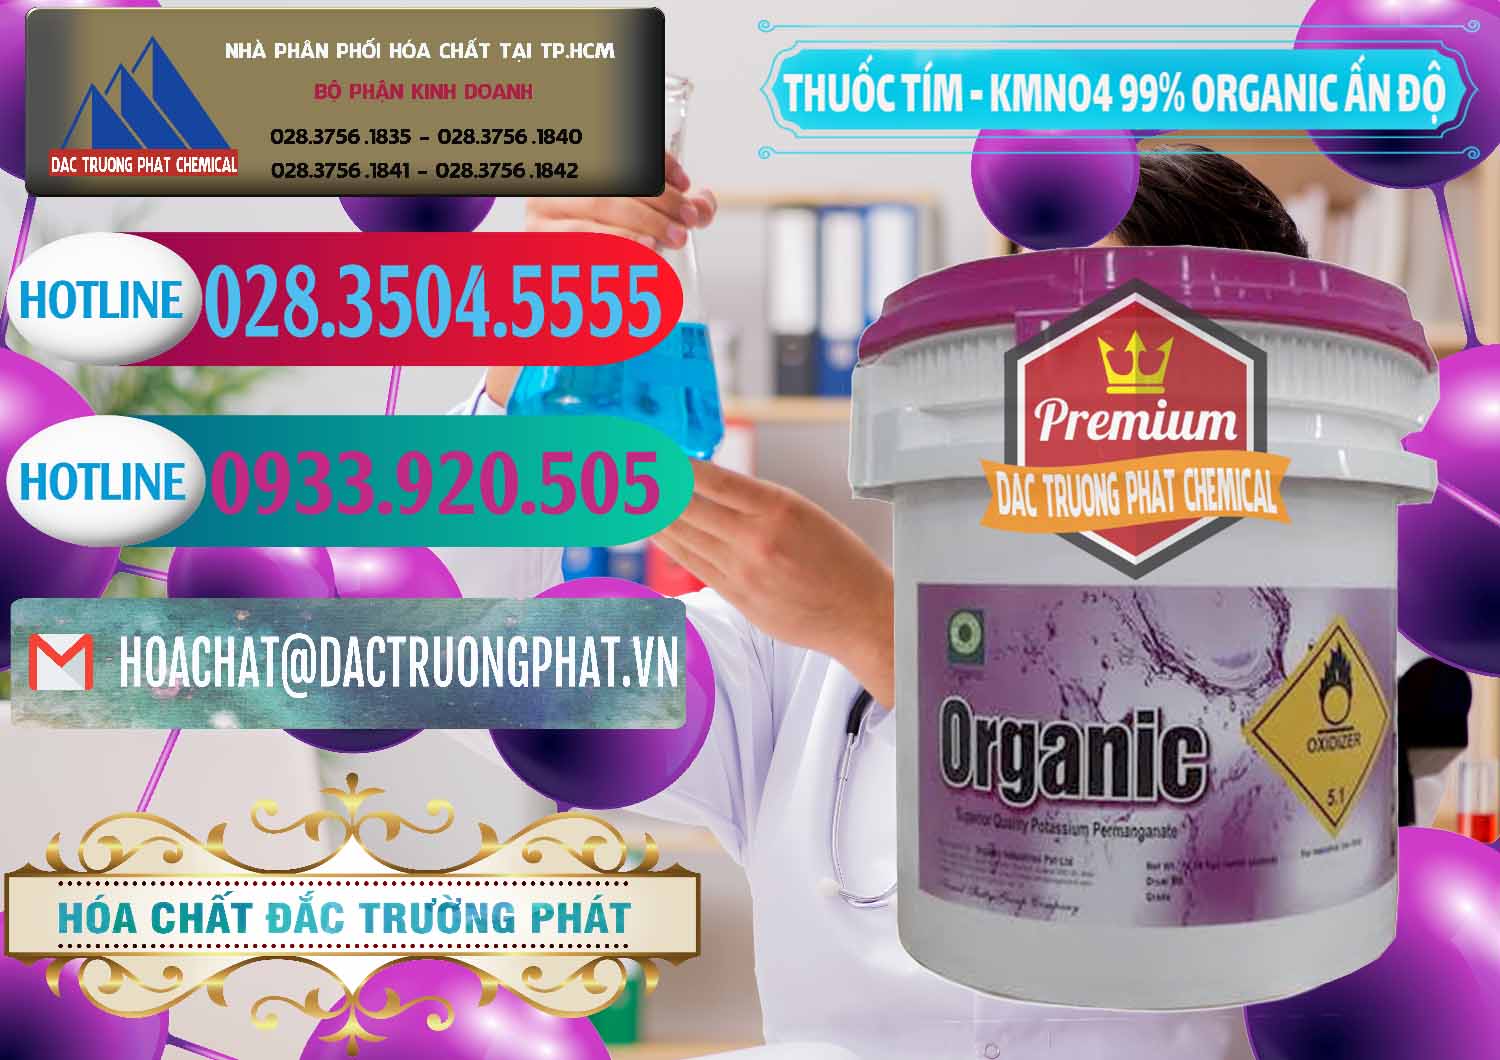 Bán - cung cấp Thuốc Tím - KMNO4 99% Organic Ấn Độ India - 0216 - Đơn vị chuyên cung cấp - kinh doanh hóa chất tại TP.HCM - truongphat.vn